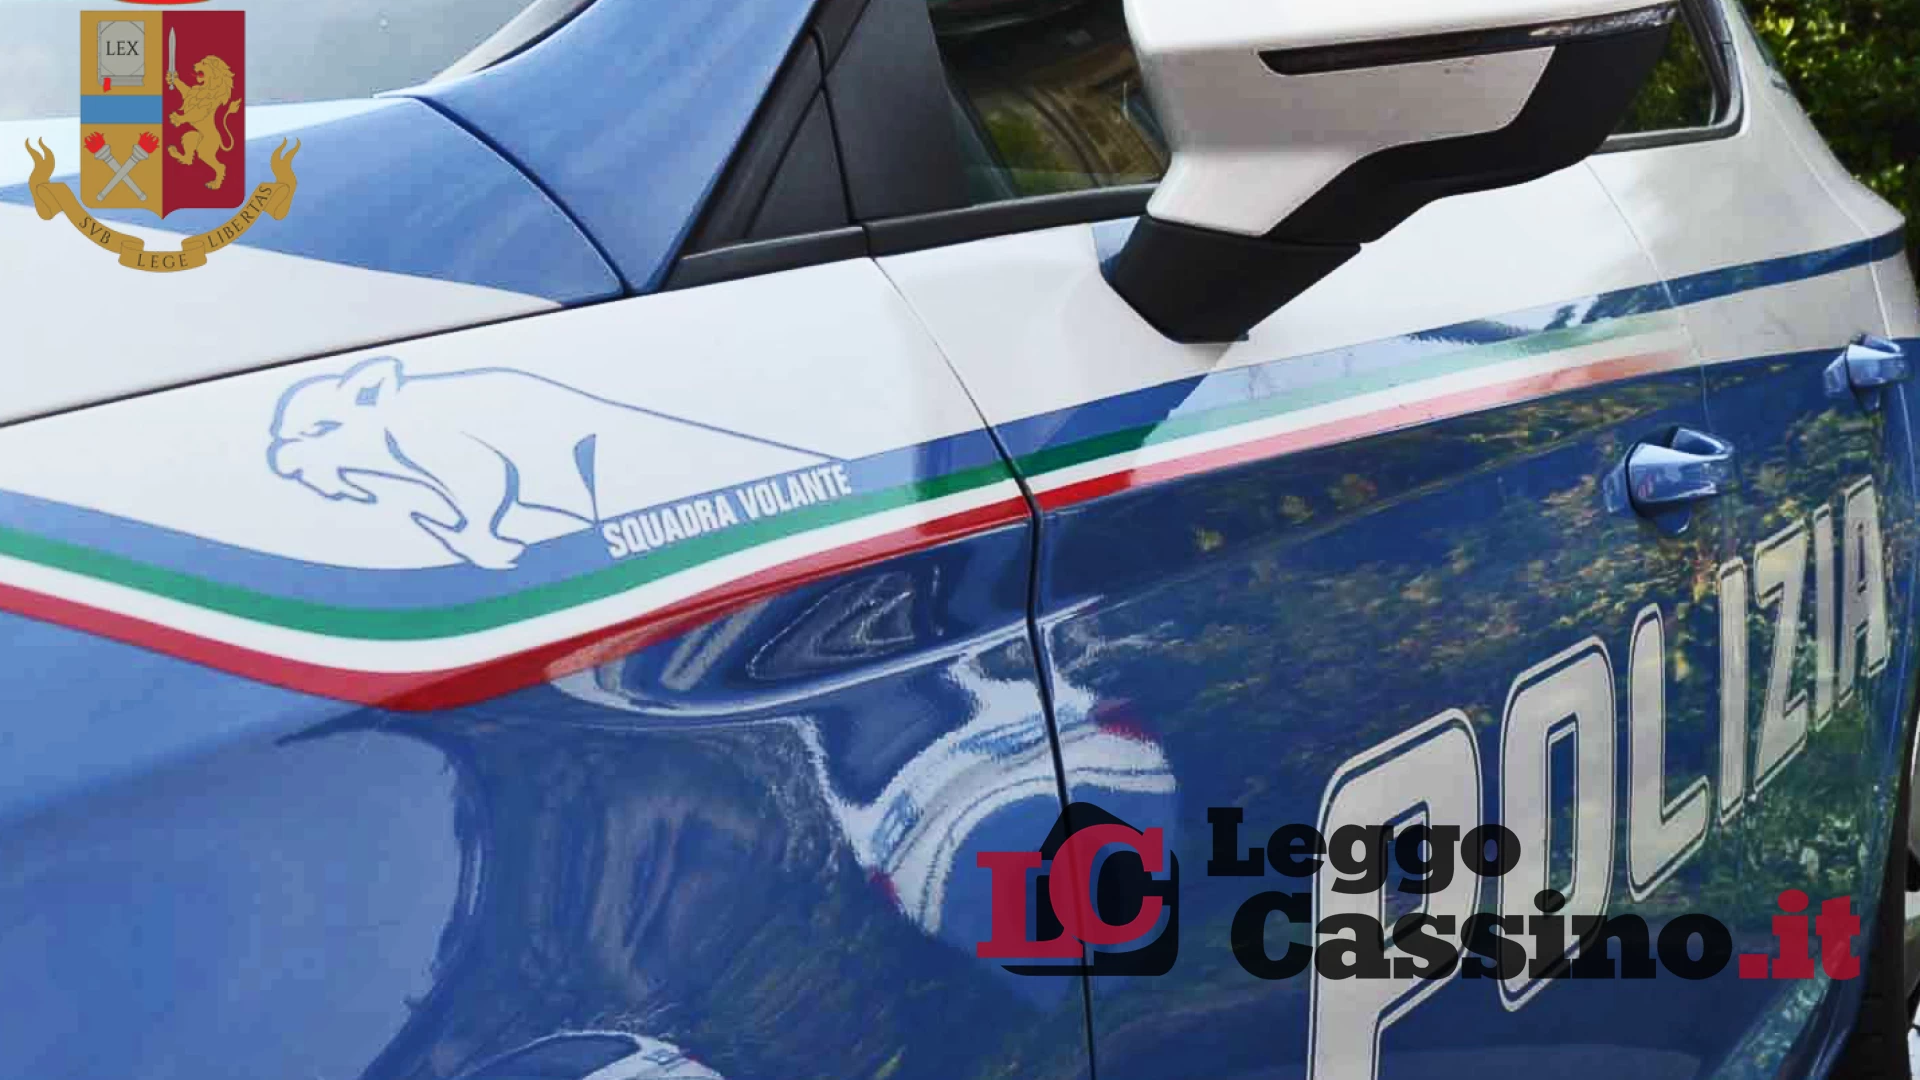 Ladro d'auto senza patente: fermato e denunciato a Cassino